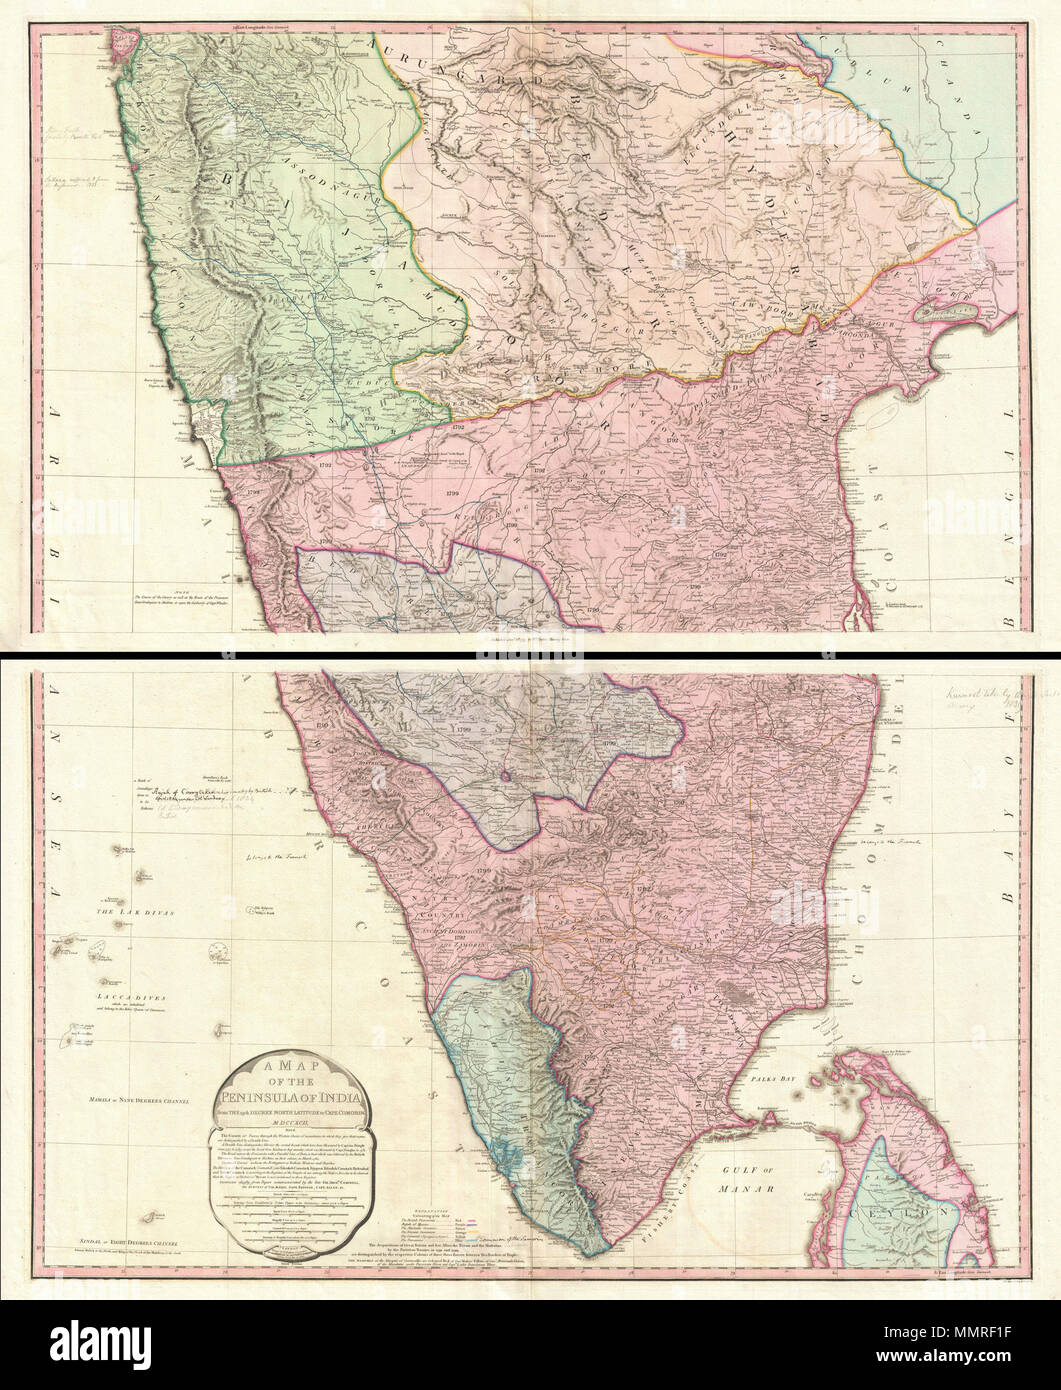 . Englisch: Diese Karte (als "Third Edition'), wird sofort nach dem Vierten Anglo-Mysore Krieg (1798-1799) geschaffen wurde, ist auf der 1793 Faden Karte basiert (ohne Hinweis), sofort nach der dritten Anglo-Mysore Krieg (1789-92) und die spätere Teilung und territorialen Verluste, die durch das Königreich Mysore durch den Vertrag 1792 von Seringapatam erstellt. Der einzige Unterschied zu der älteren Karte auf dem politischen Gebiet, die umfassende Erweiterung des Gebiets der British East India Company (über die Erfahrungen der Vertrag 1792 von Seringapatam), und die jetzt viel kleiner Fürstlichen Staat von Mysore Stockfoto